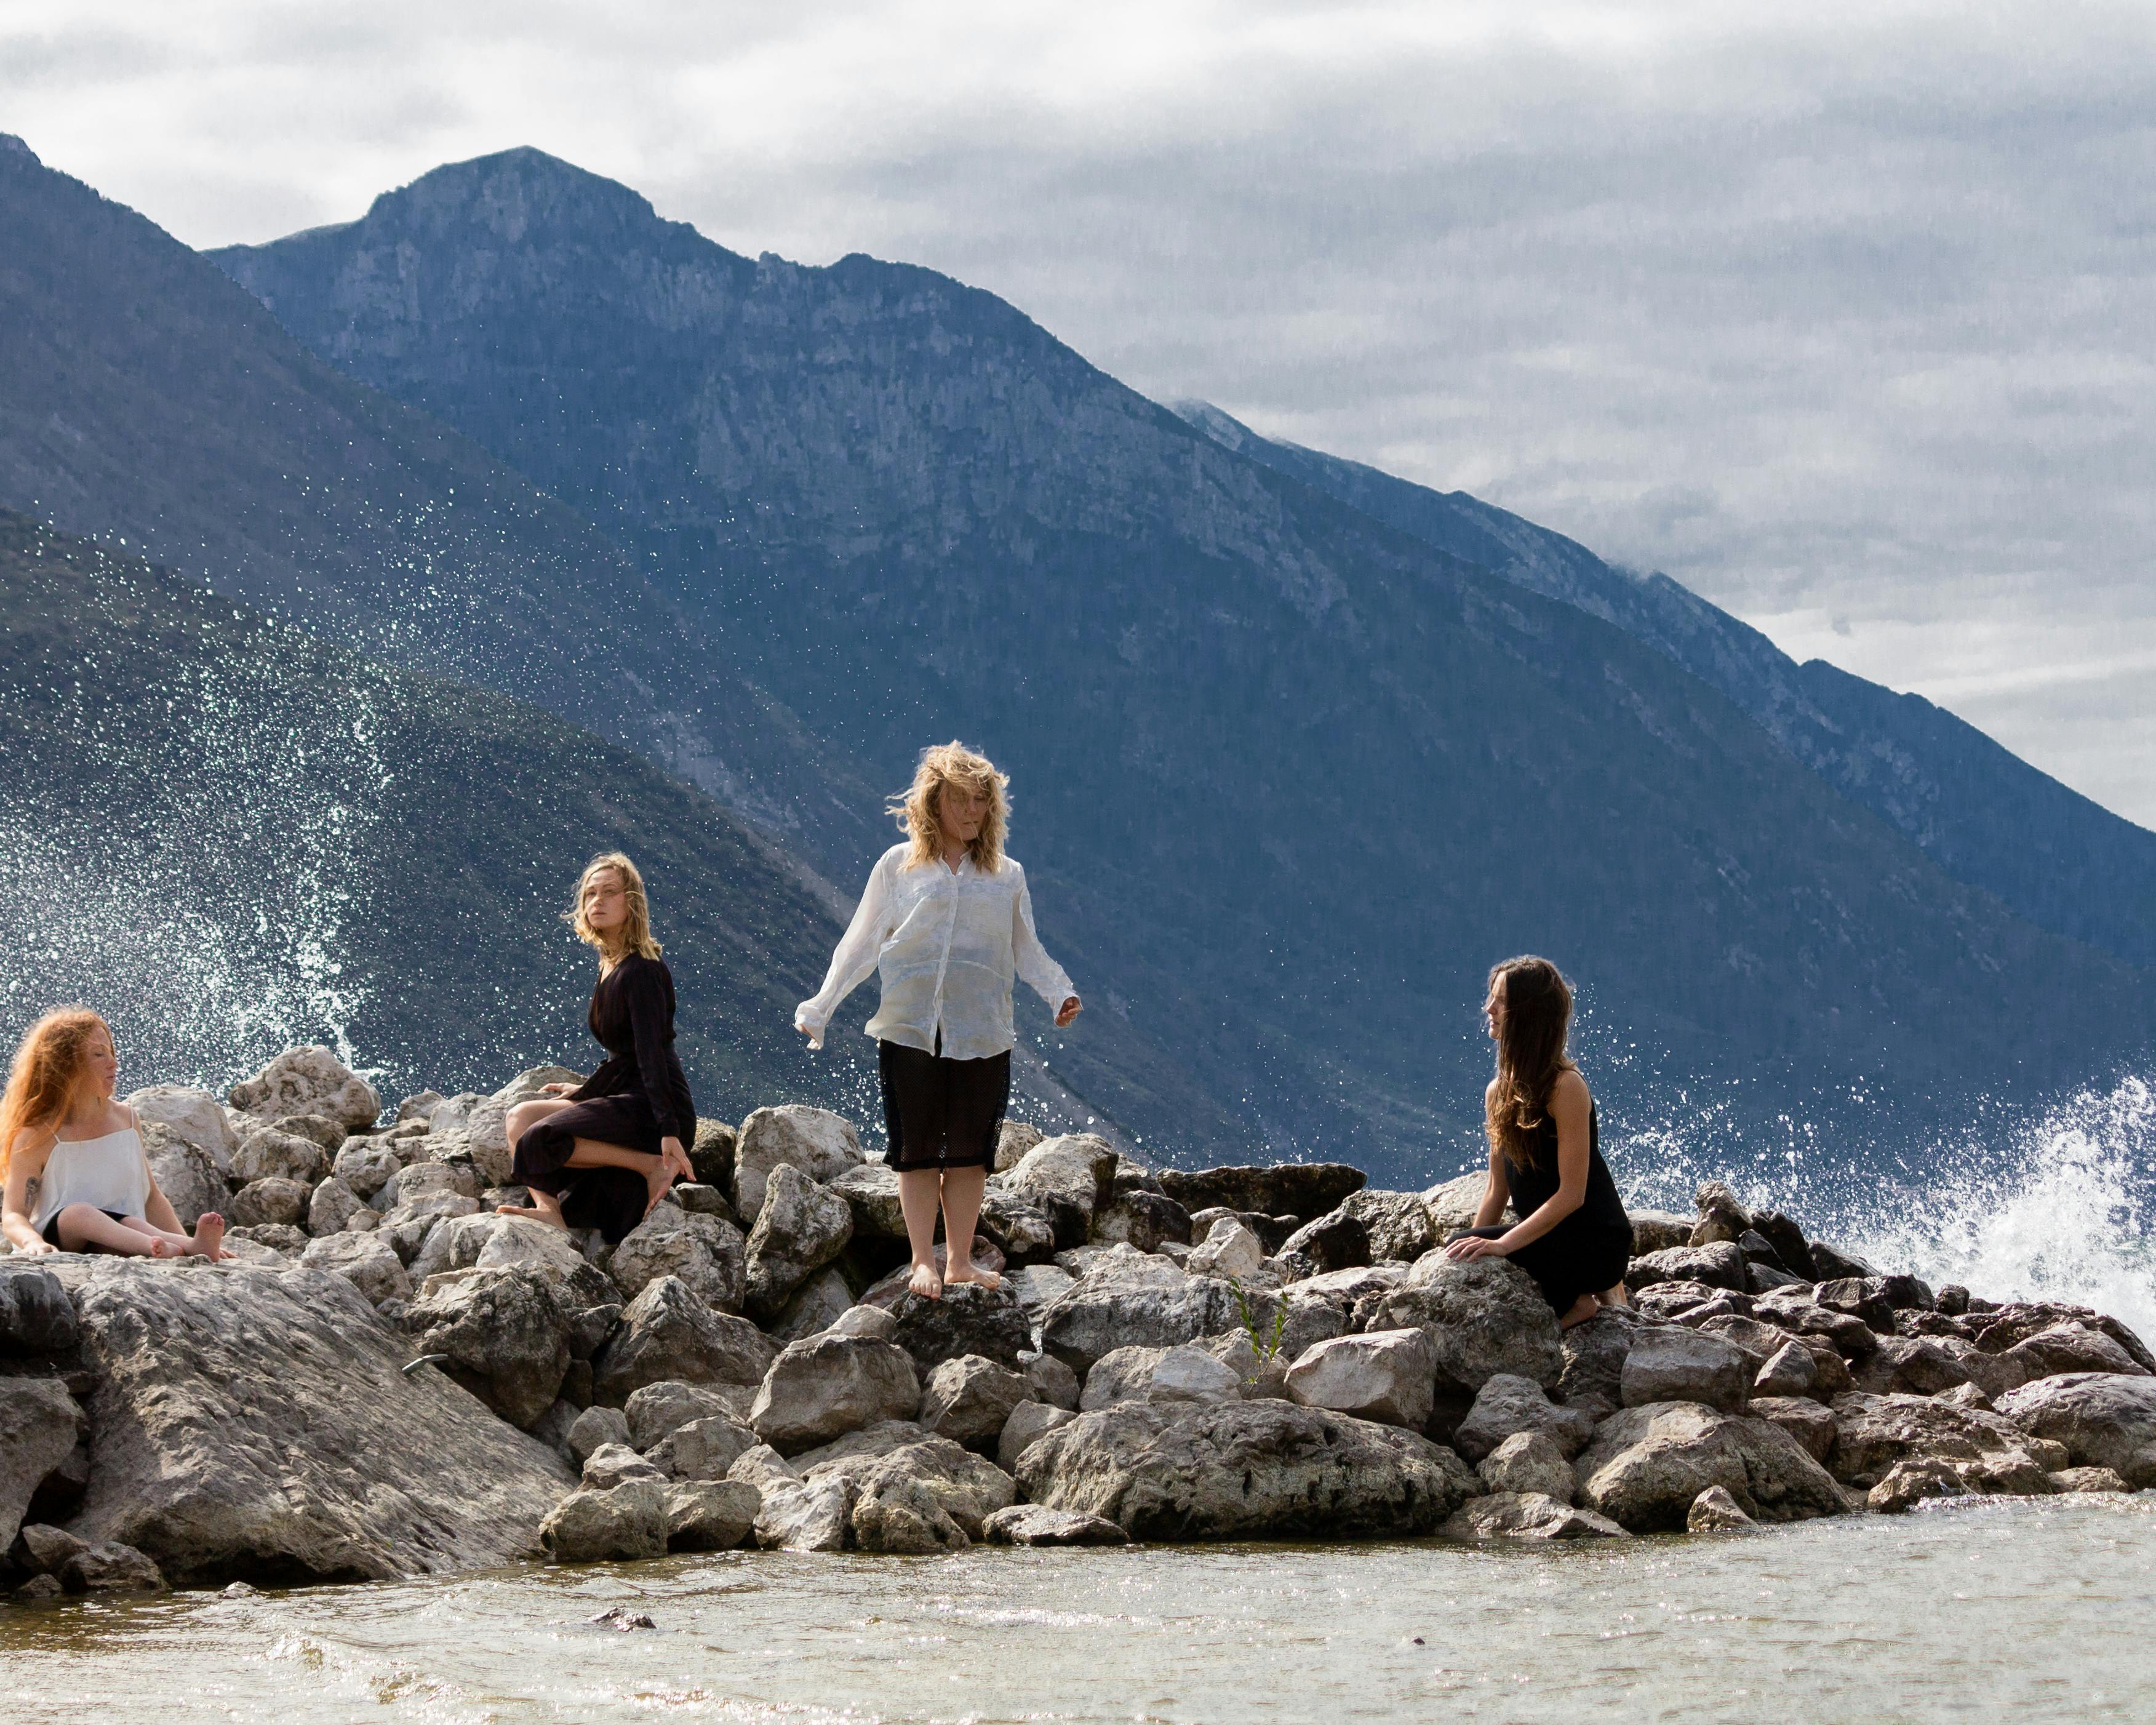 Si vedono delle rocce su una superficie d'acqua; sullo sfondo le montagne.  Quattro donne sono in piedi o sedute sulle rocce, ferme in attesa. Spruzzi d'acqua ne incorniciano le figure.